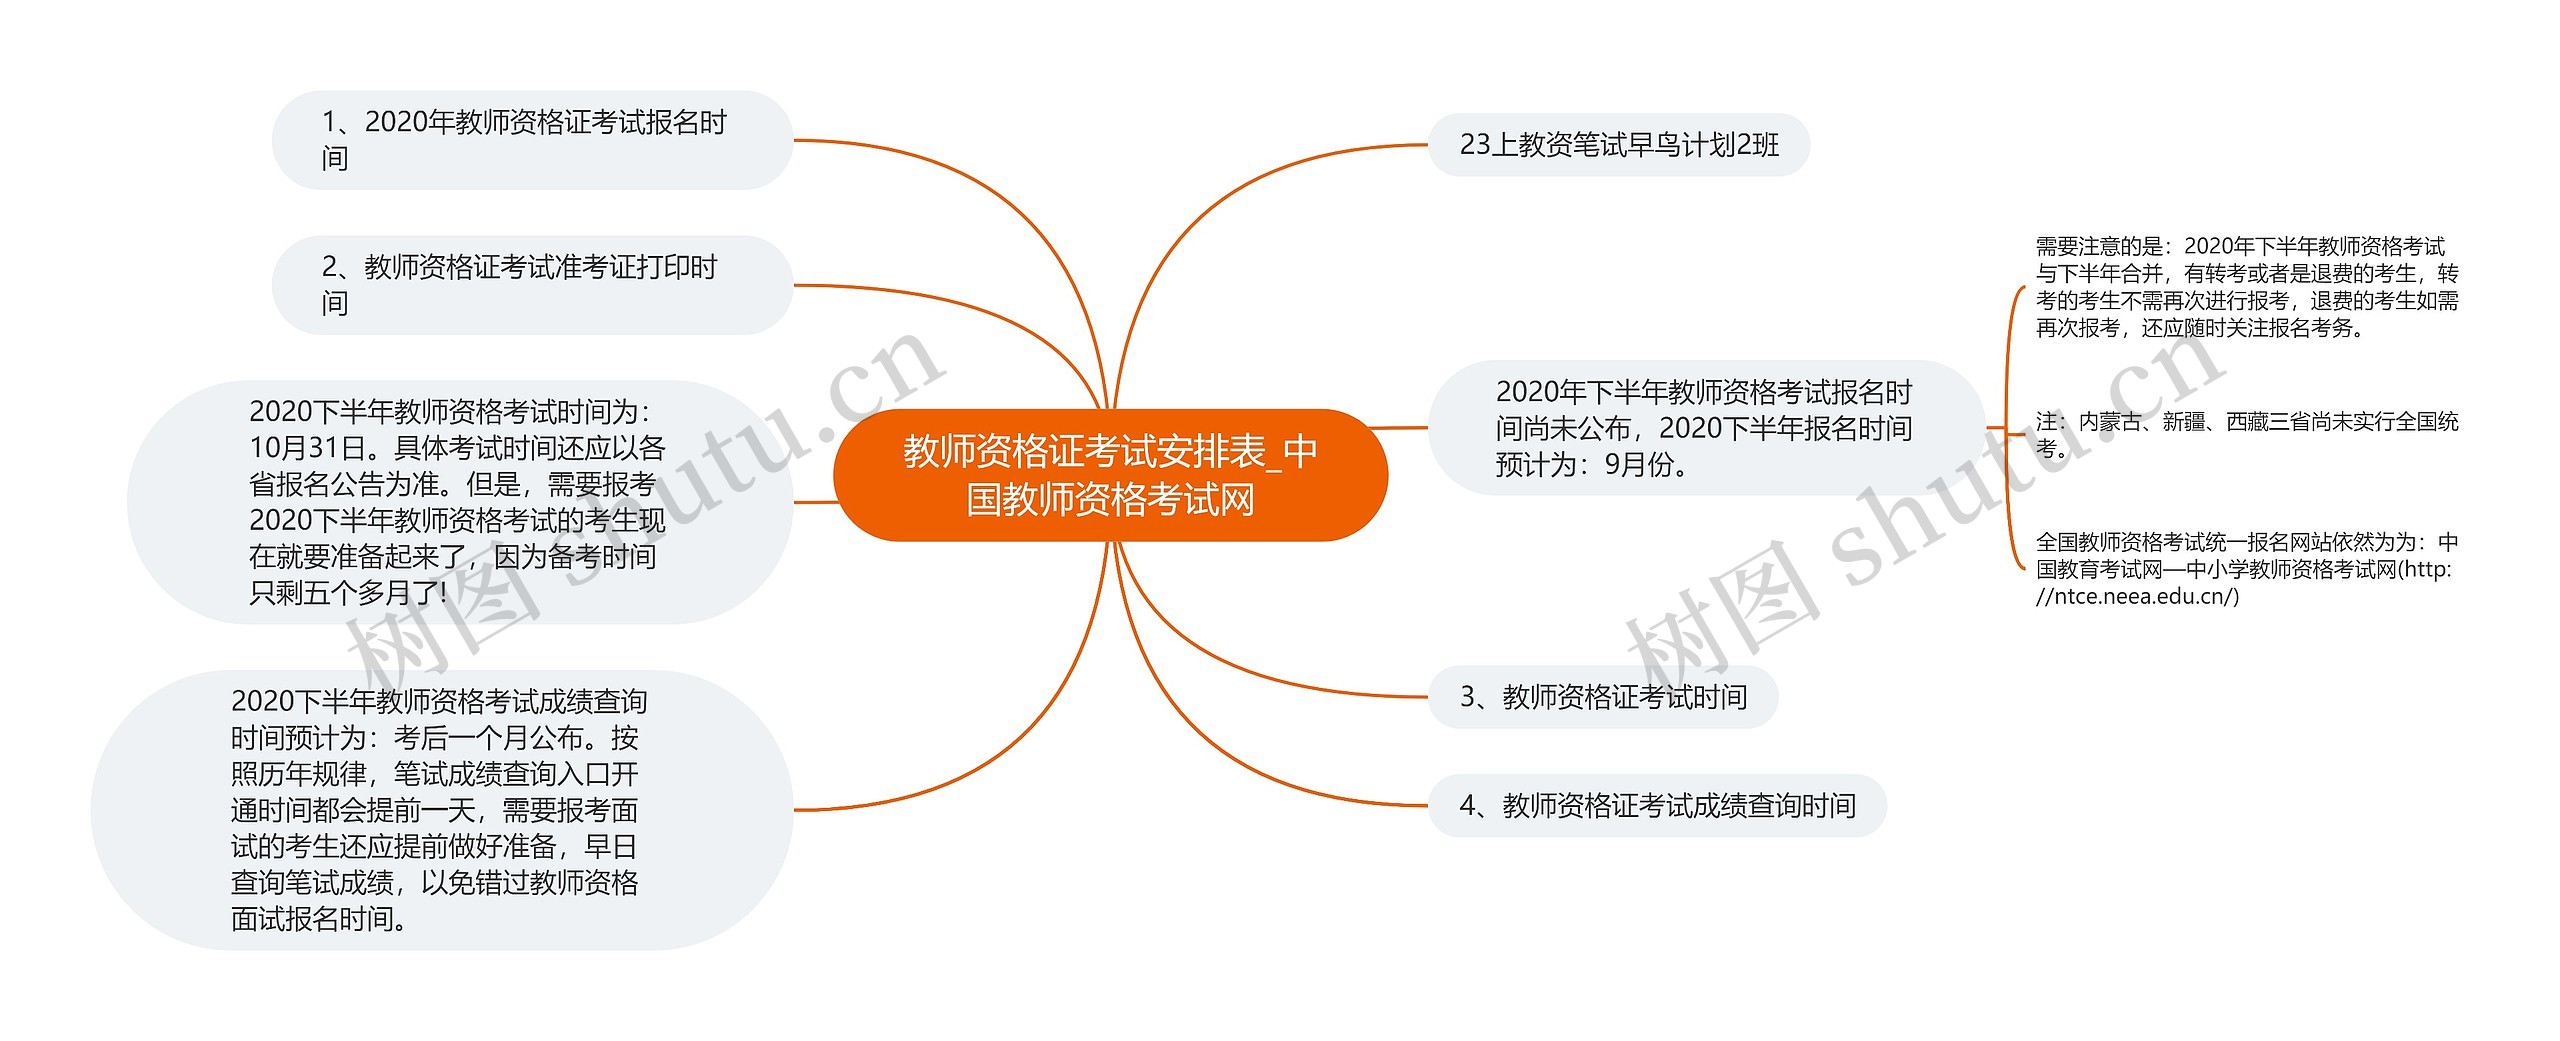 教师资格证考试安排表_中国教师资格考试网思维导图